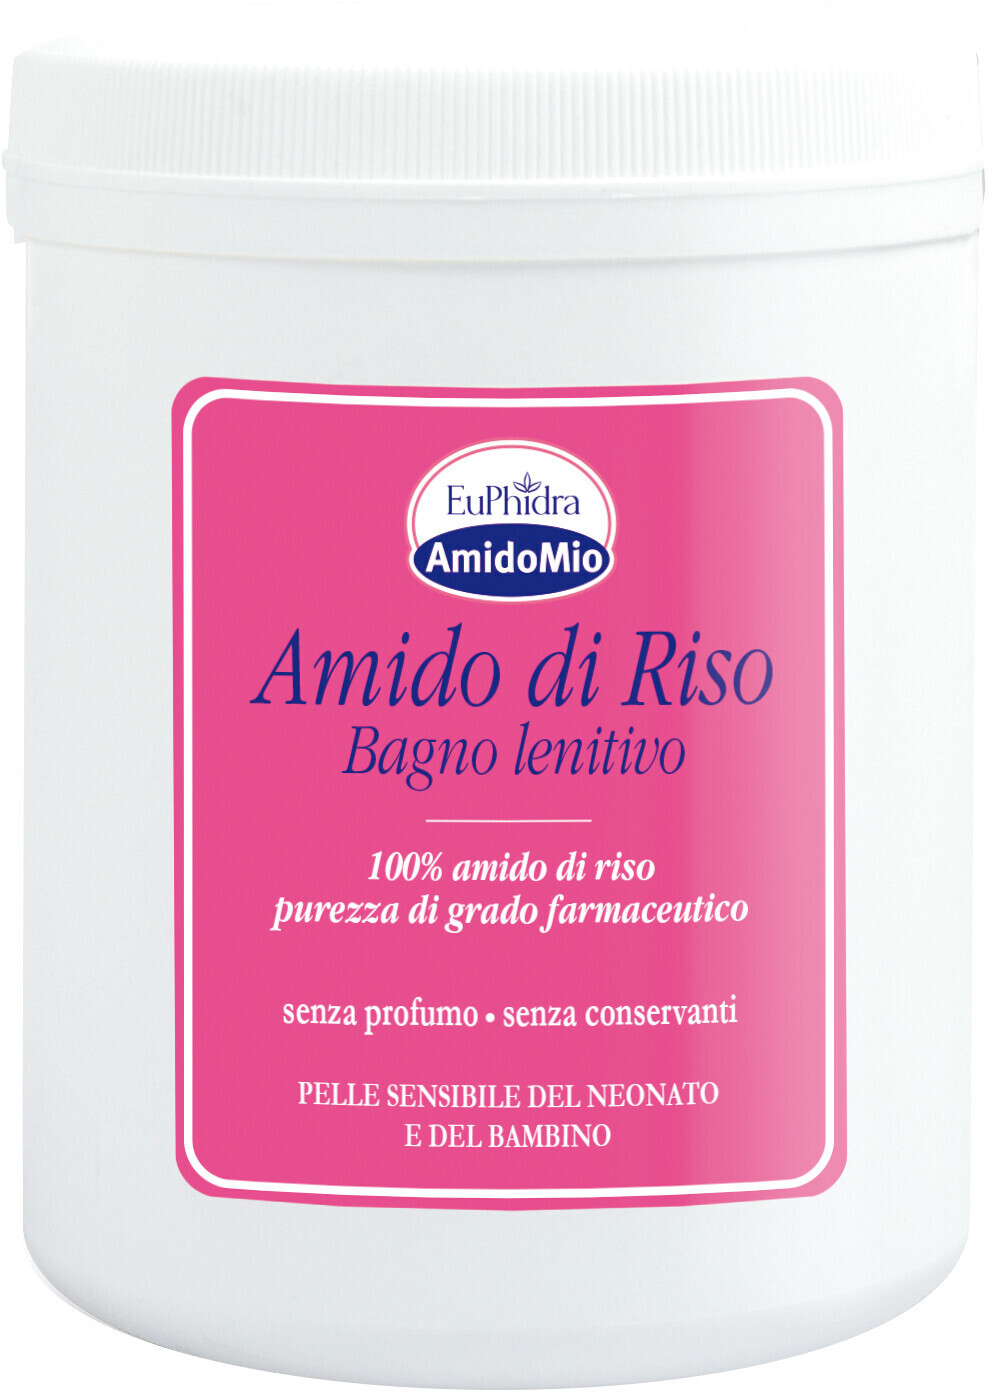 euPhidra Amidomio Amido di riso bagno lenitivo 200g a € 3,73 (oggi)